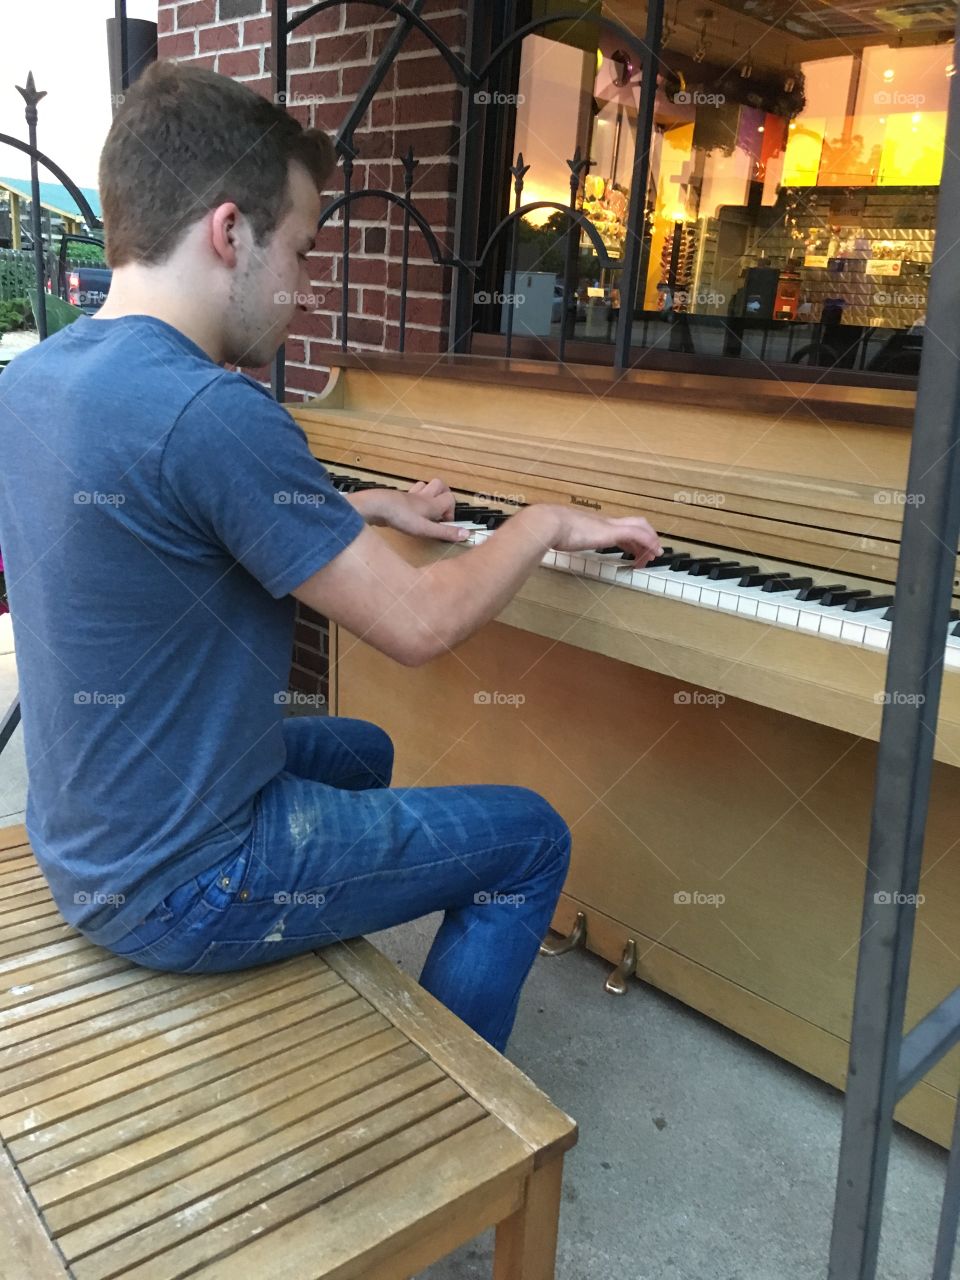 Outdoor piano 